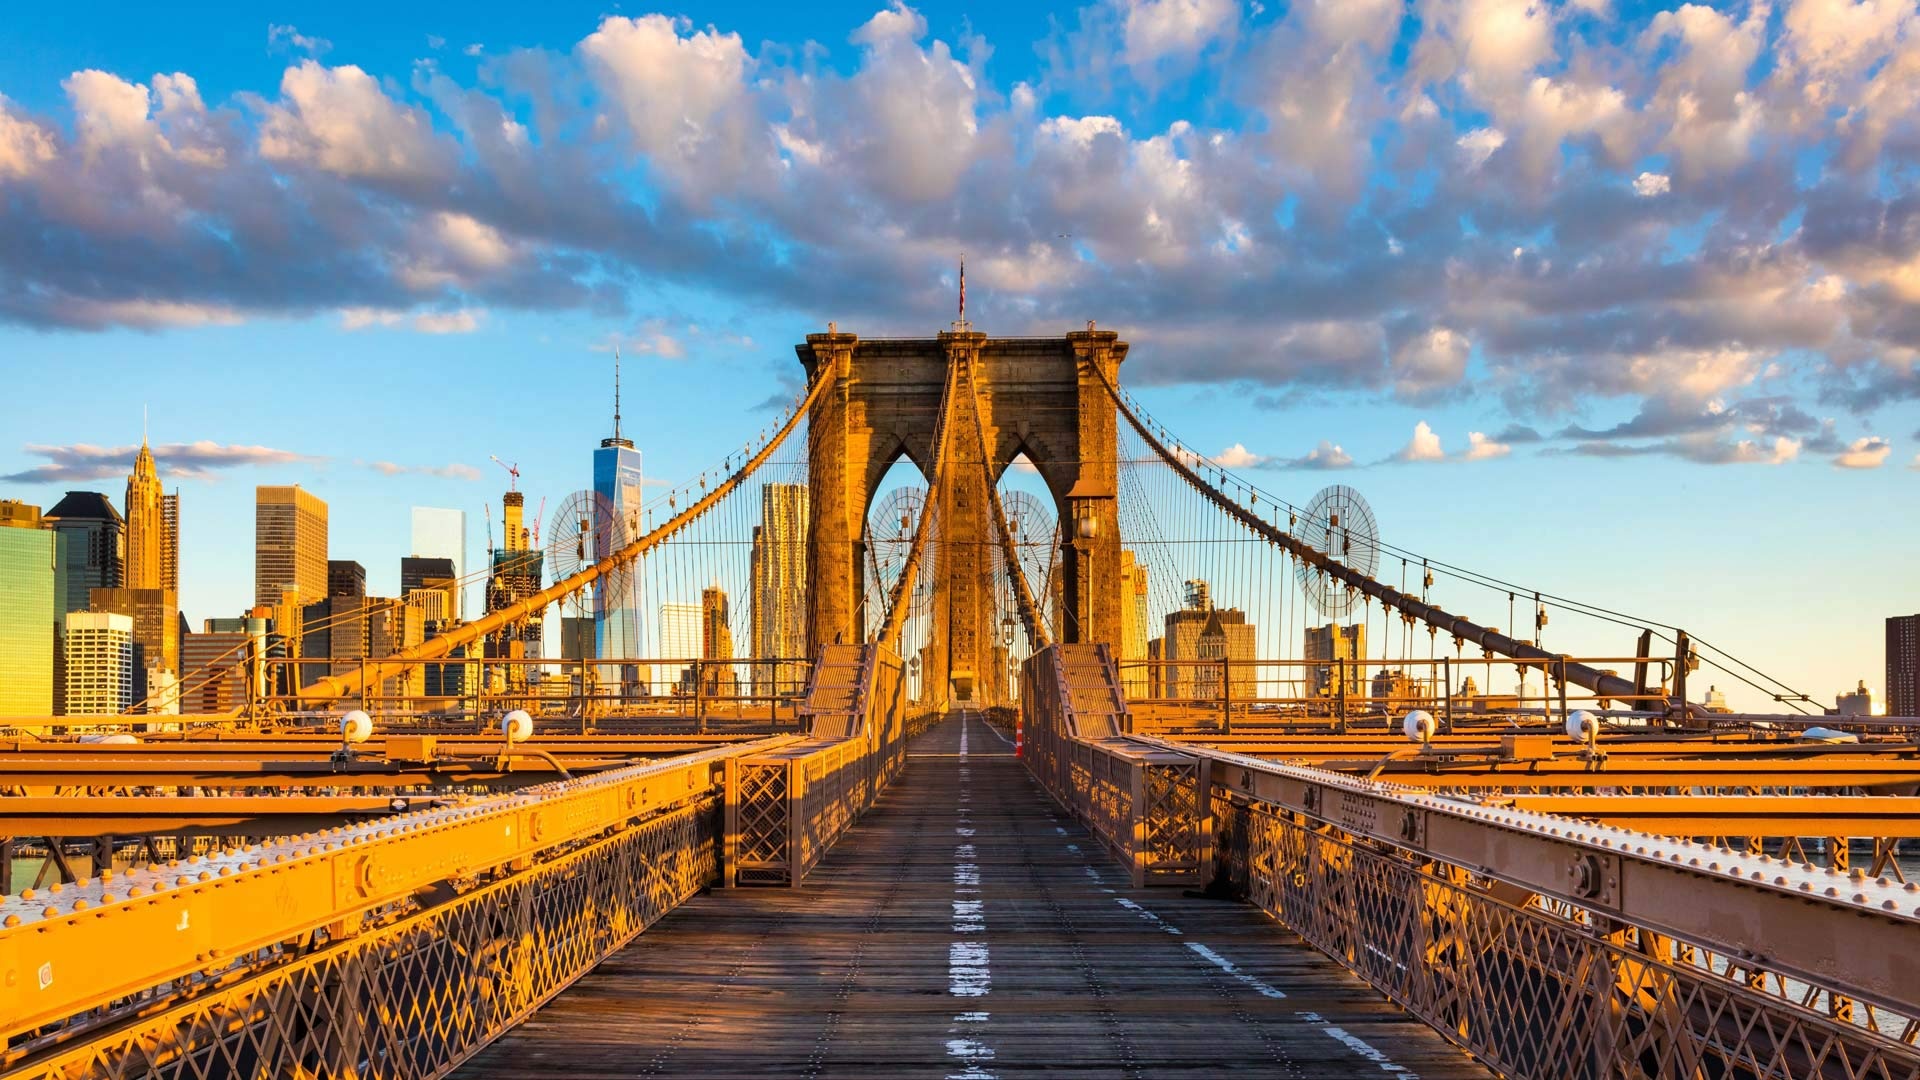 Brooklyn Bridge, Bing gallery, New York, Beautiful photos, 1920x1080 Full HD Desktop